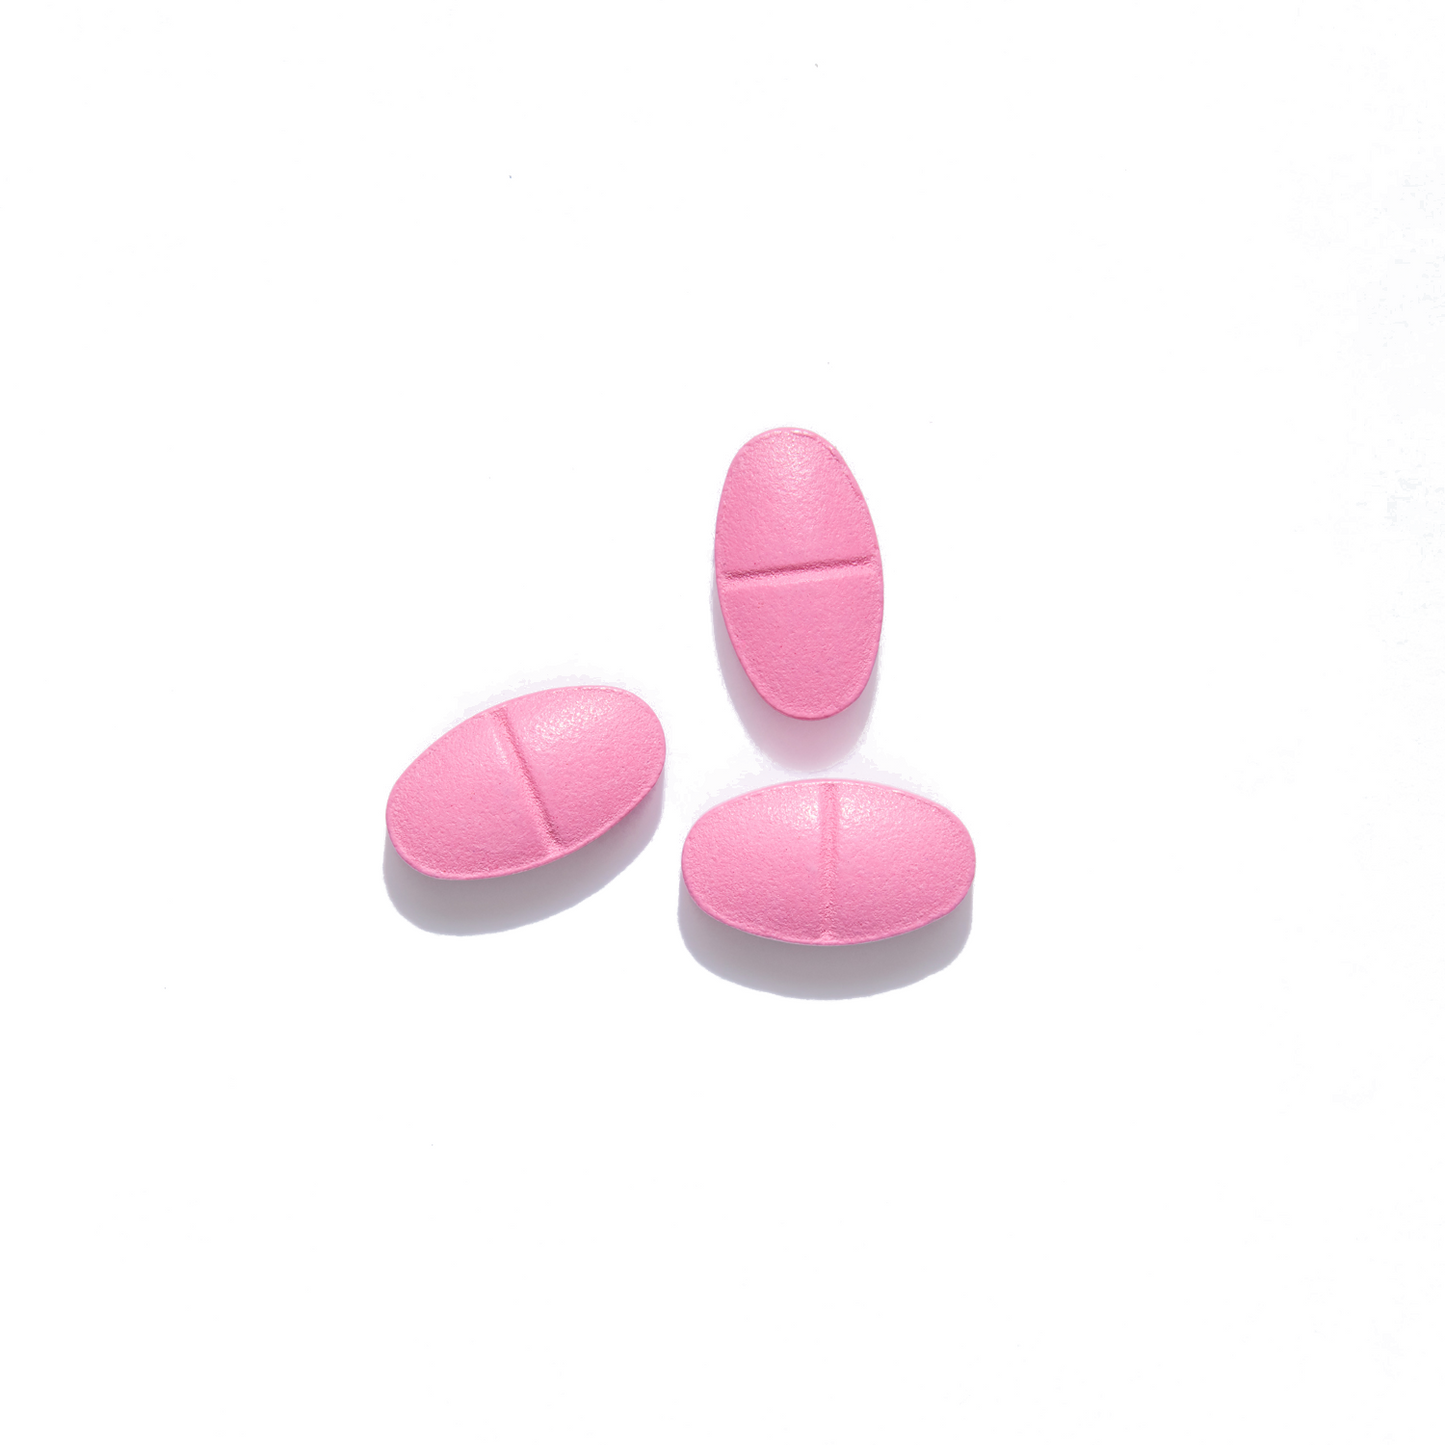 [Rx] AURORA Rosuvastatin Calcium Tablet 10mg (30s)* | DMD Patient-Exclusive